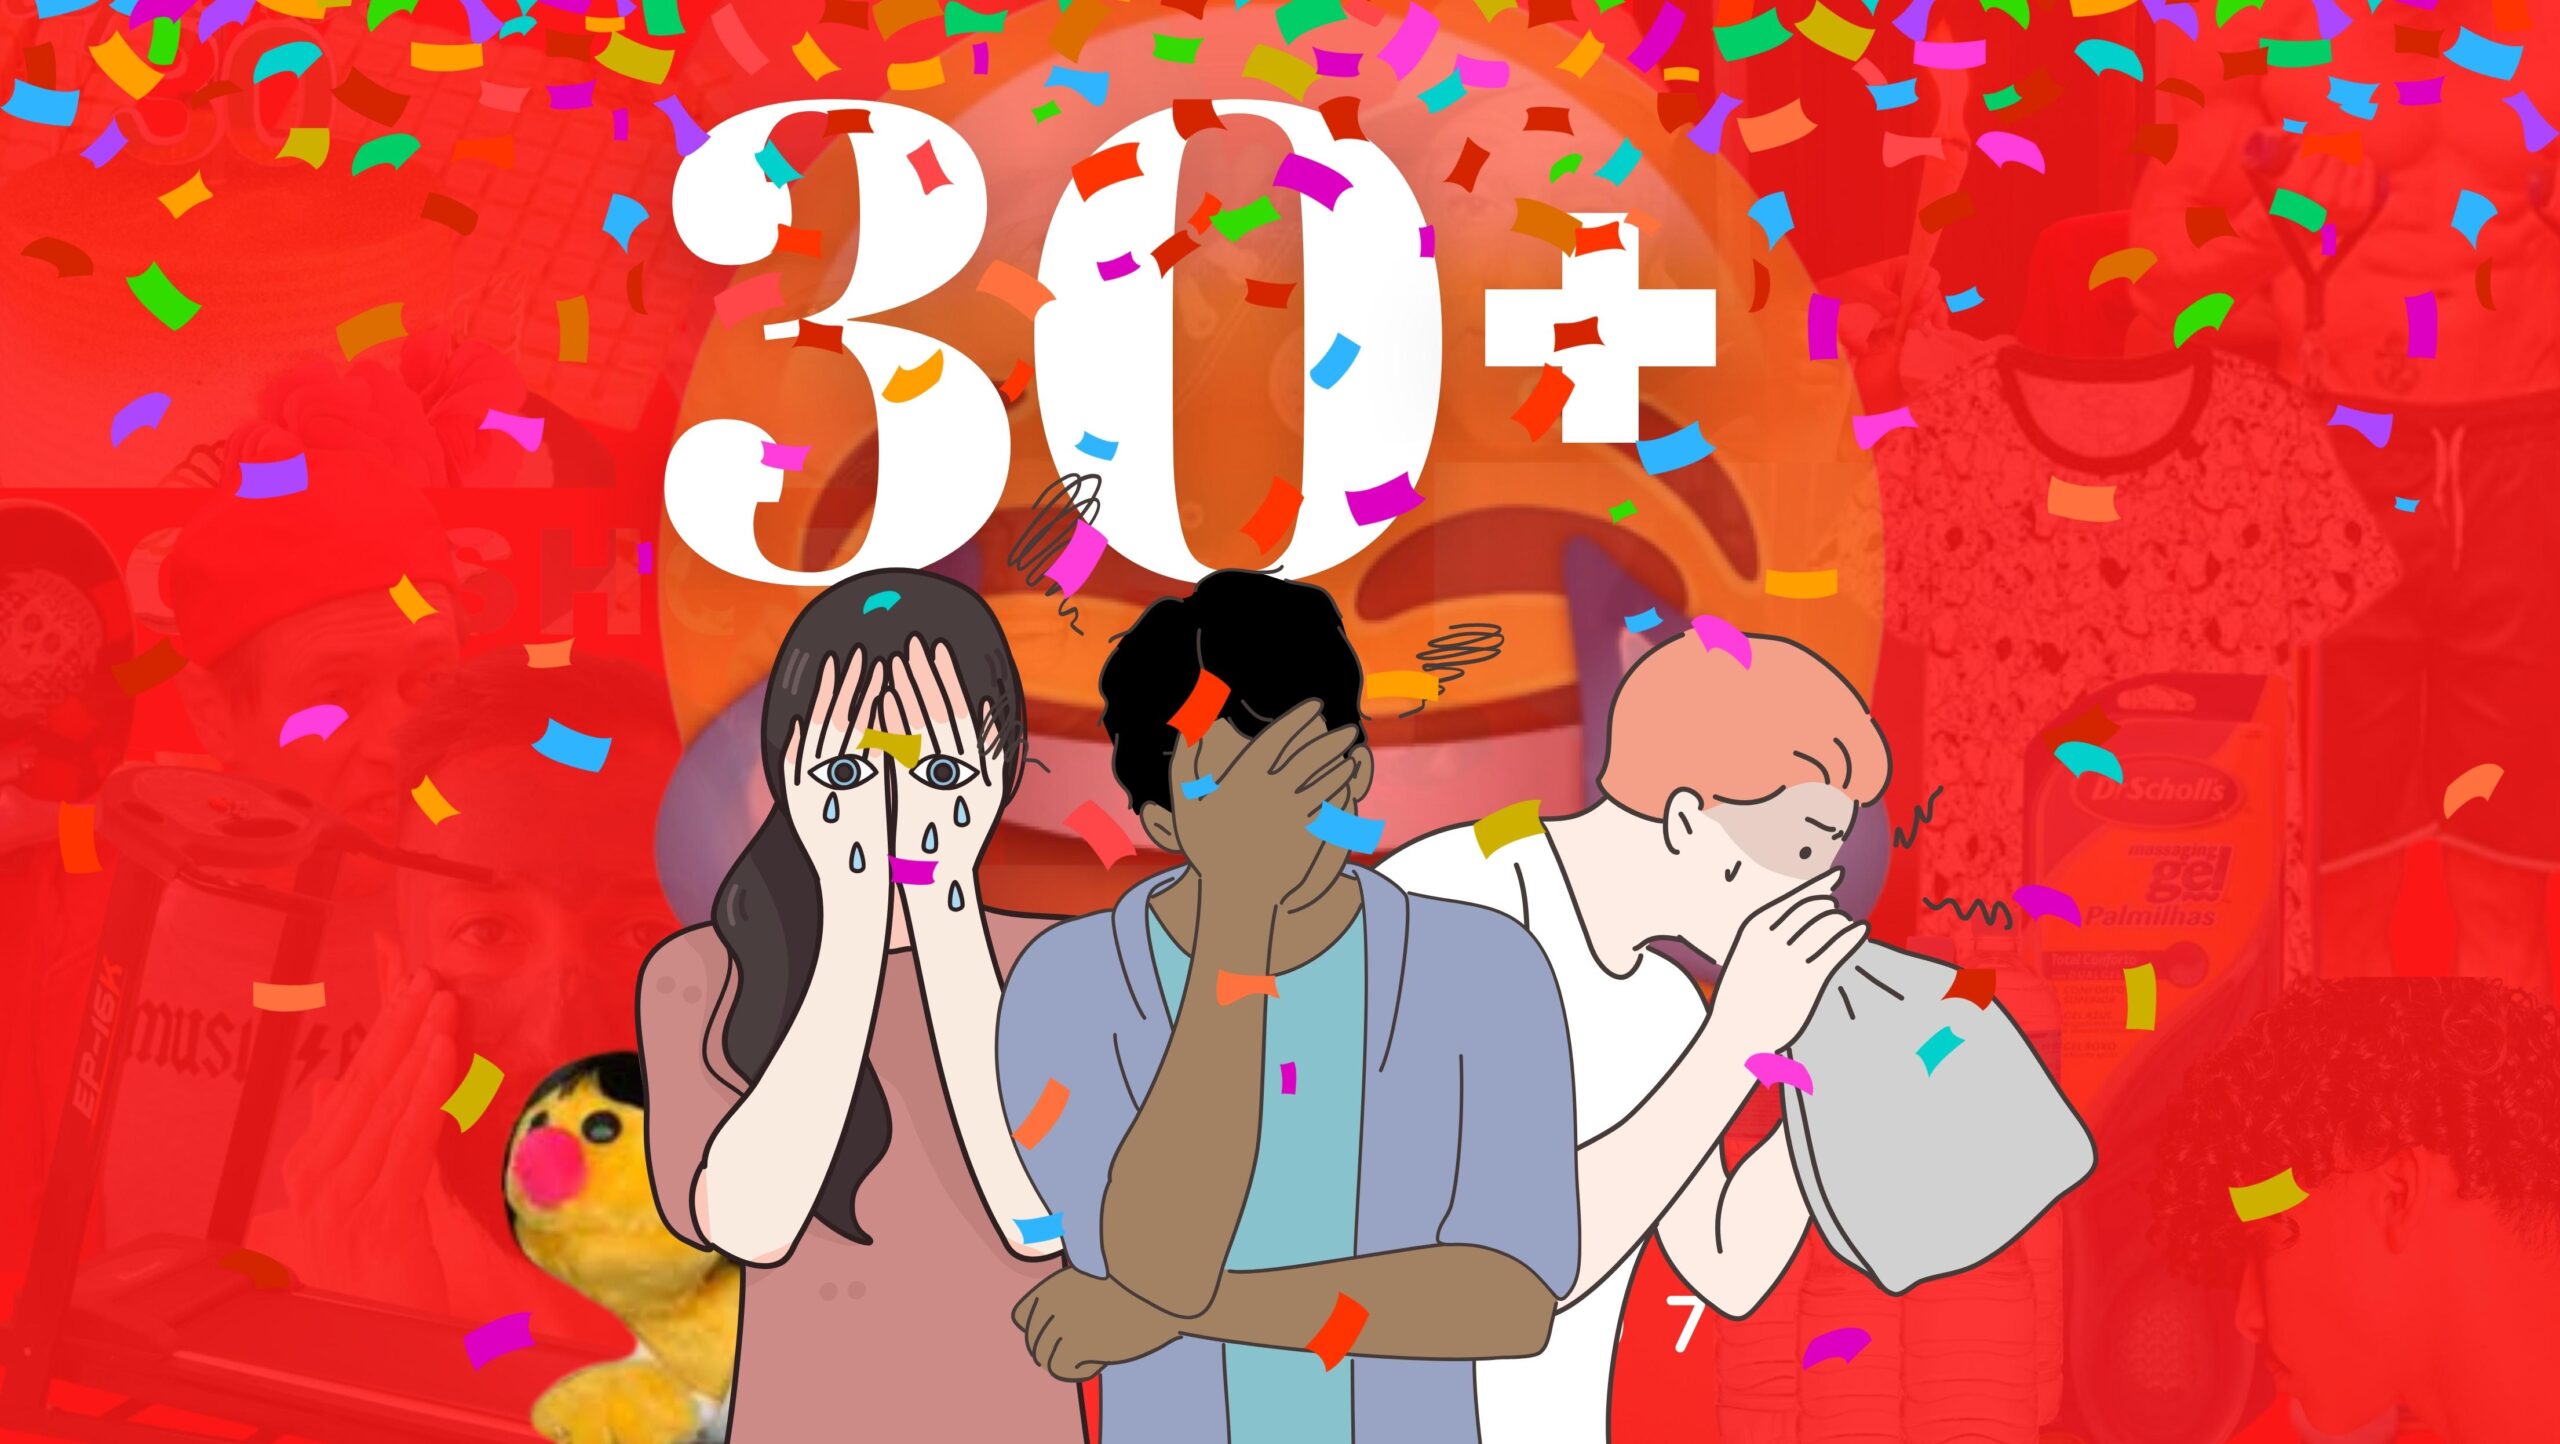 Fundo vermelho. Na frente o título do episódio "30 +" em branco. No centro, ilustração de jovens-adultos deprimidos e com ansiedade.